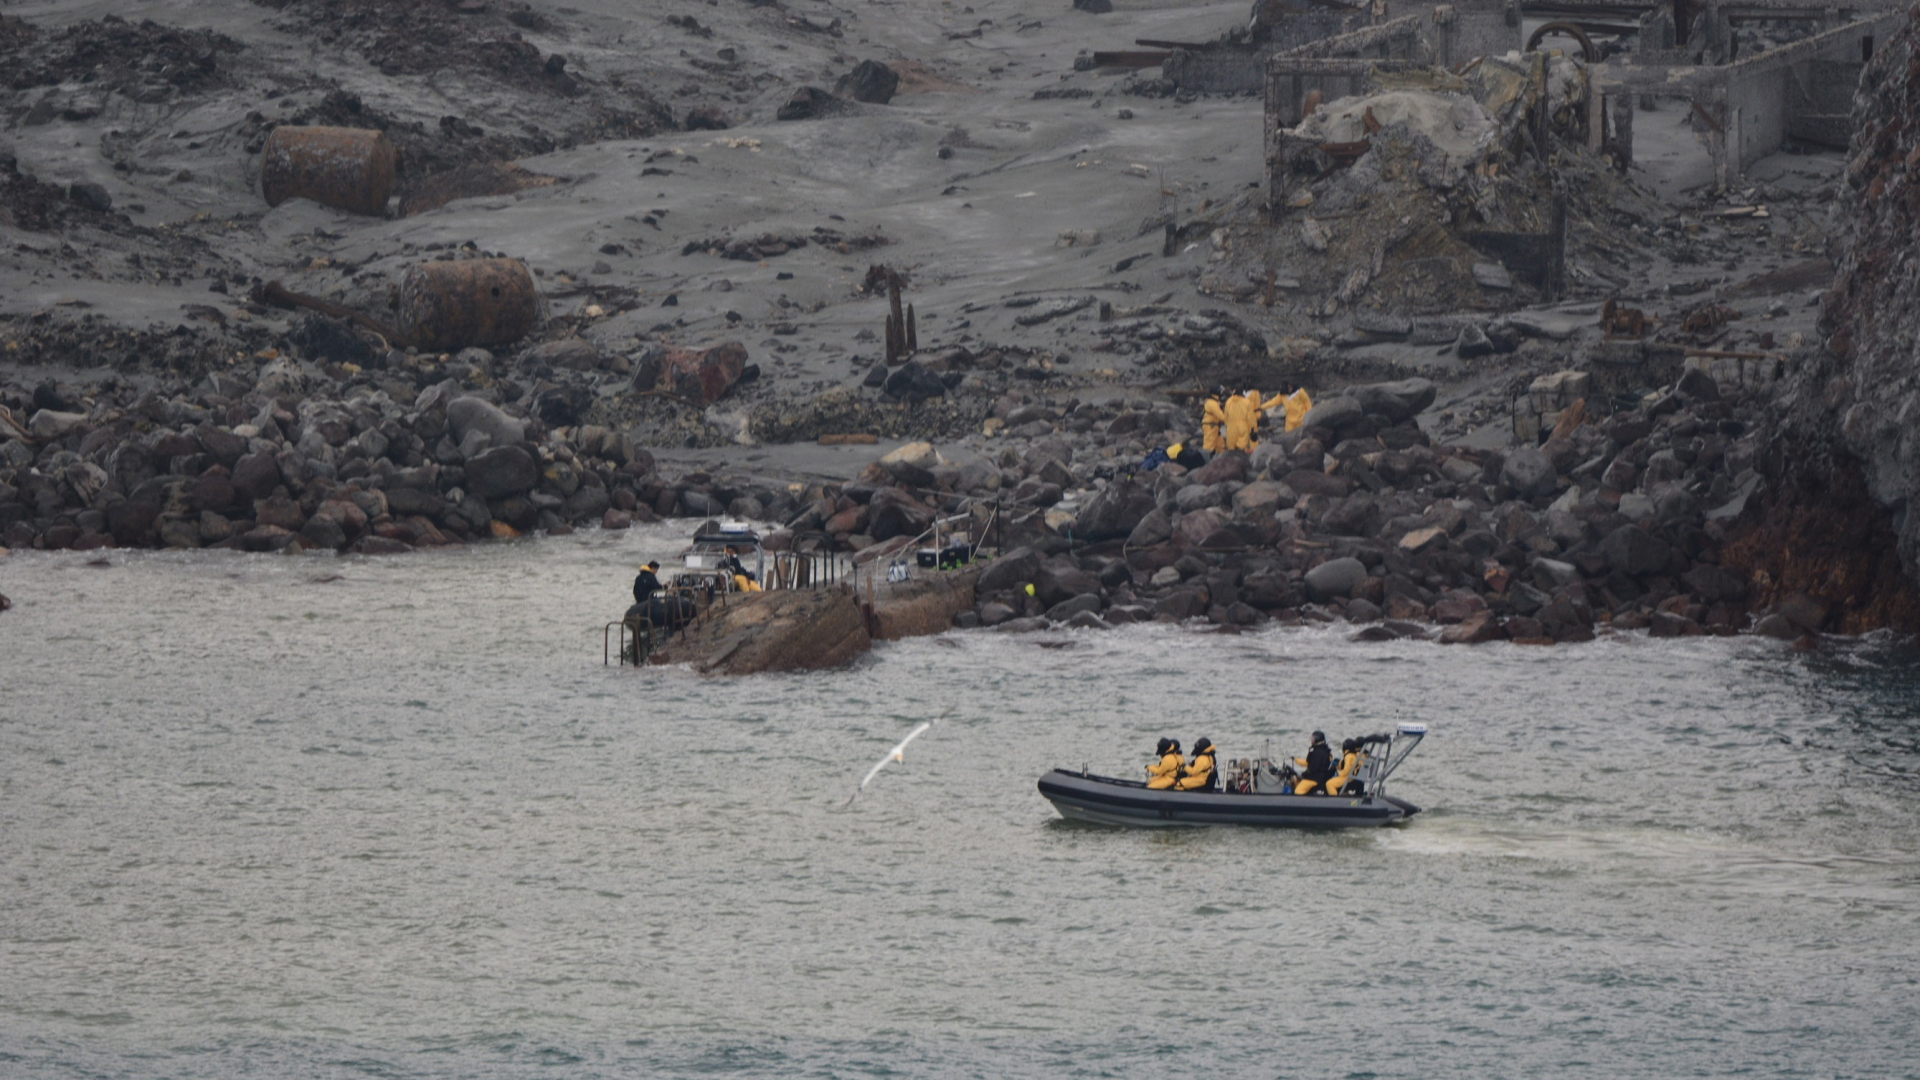 Bergunsgtrupps auf White Island im Einsatz | Bildquelle: AP